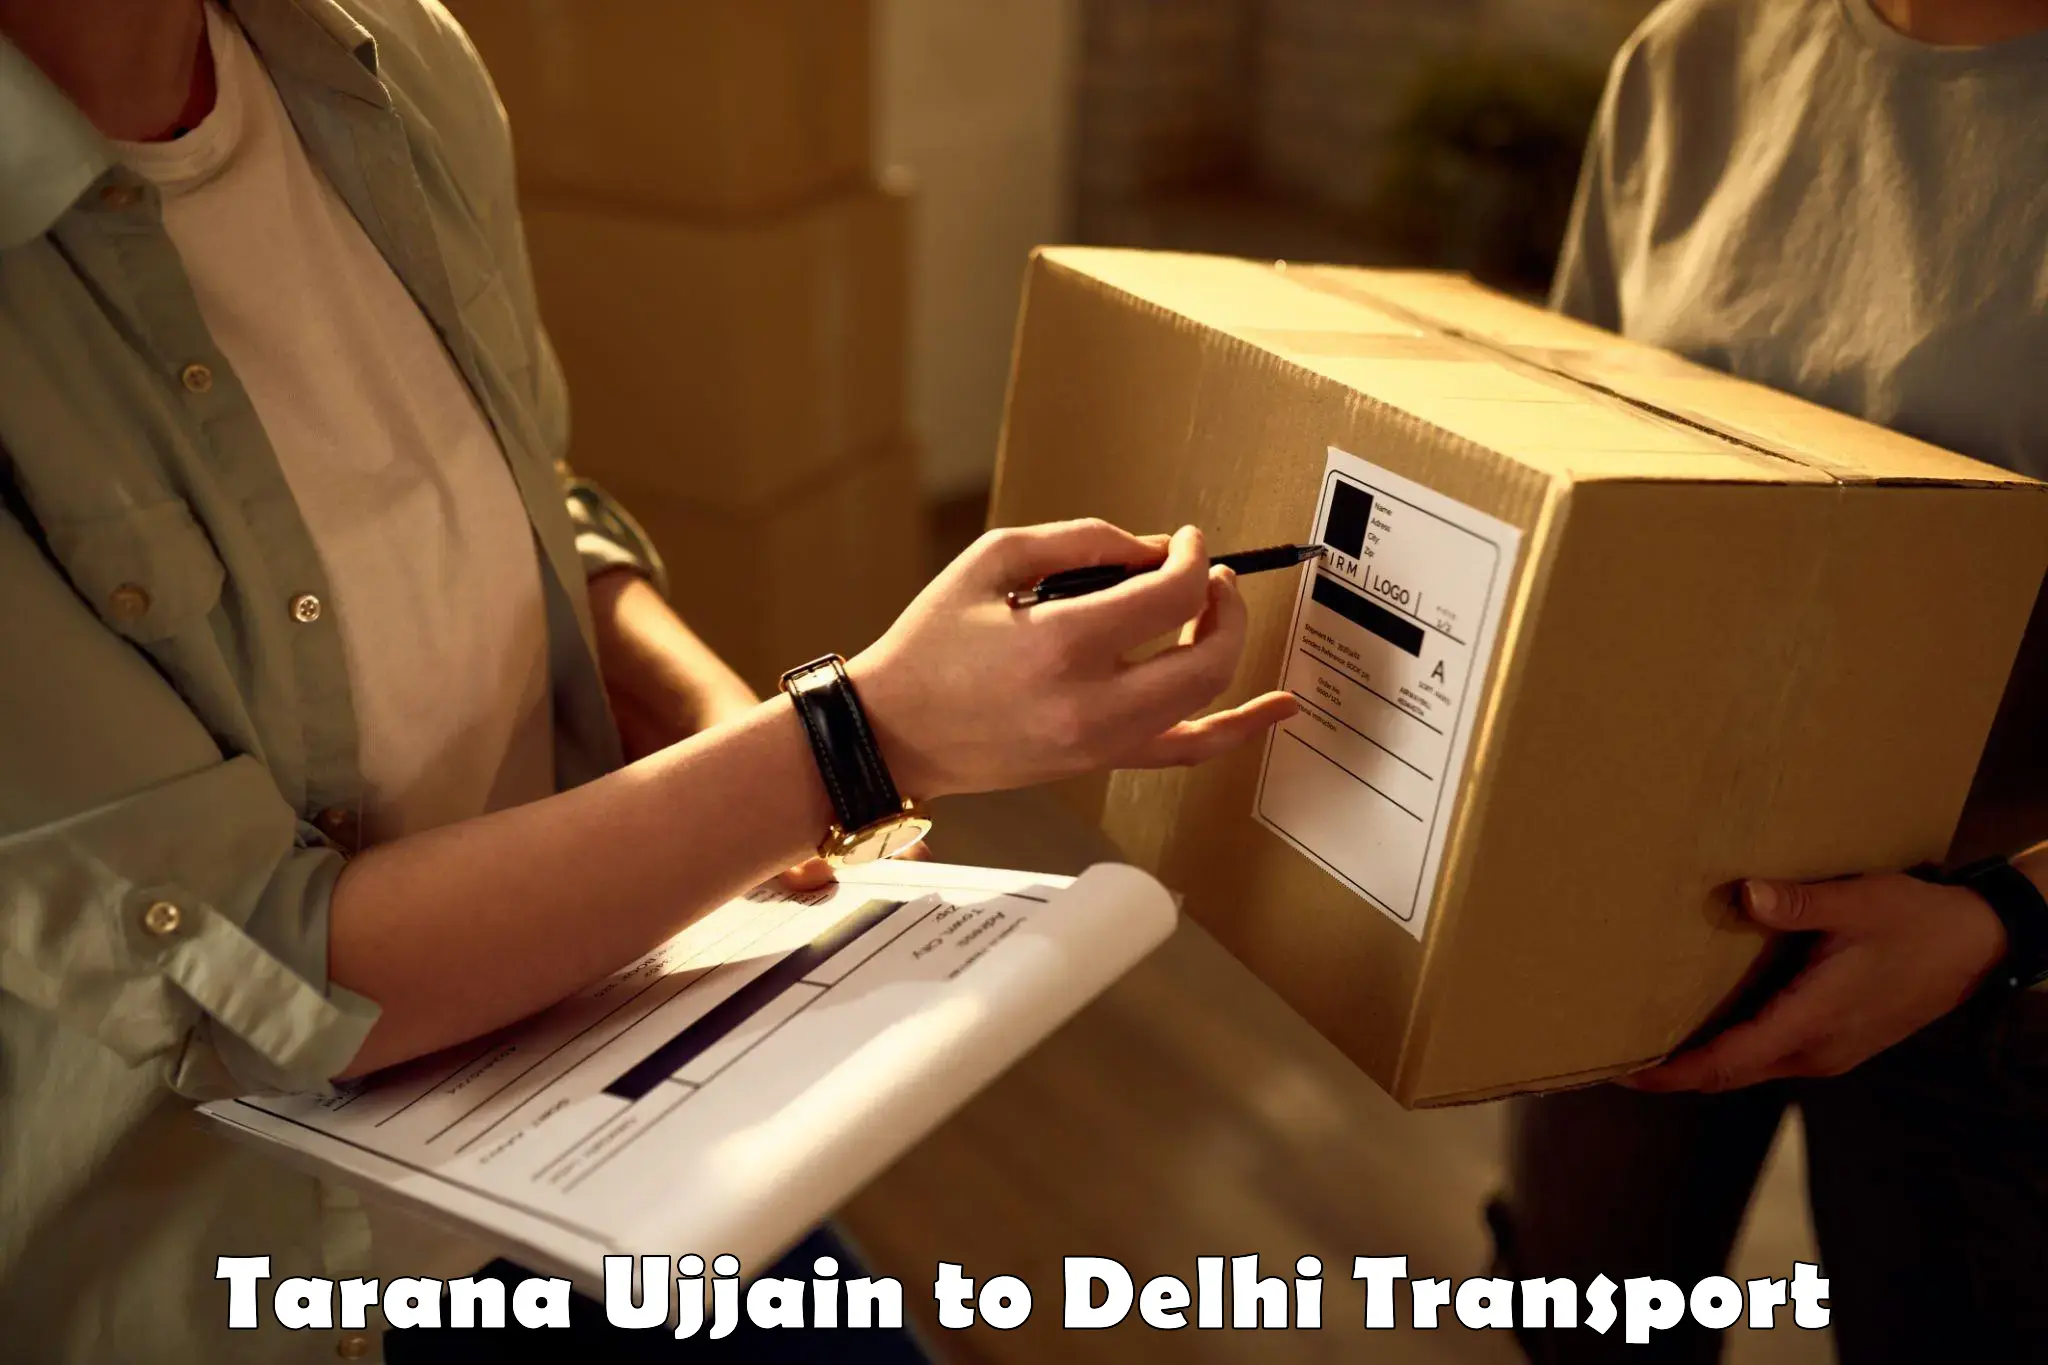 Commercial transport service Tarana Ujjain to Delhi